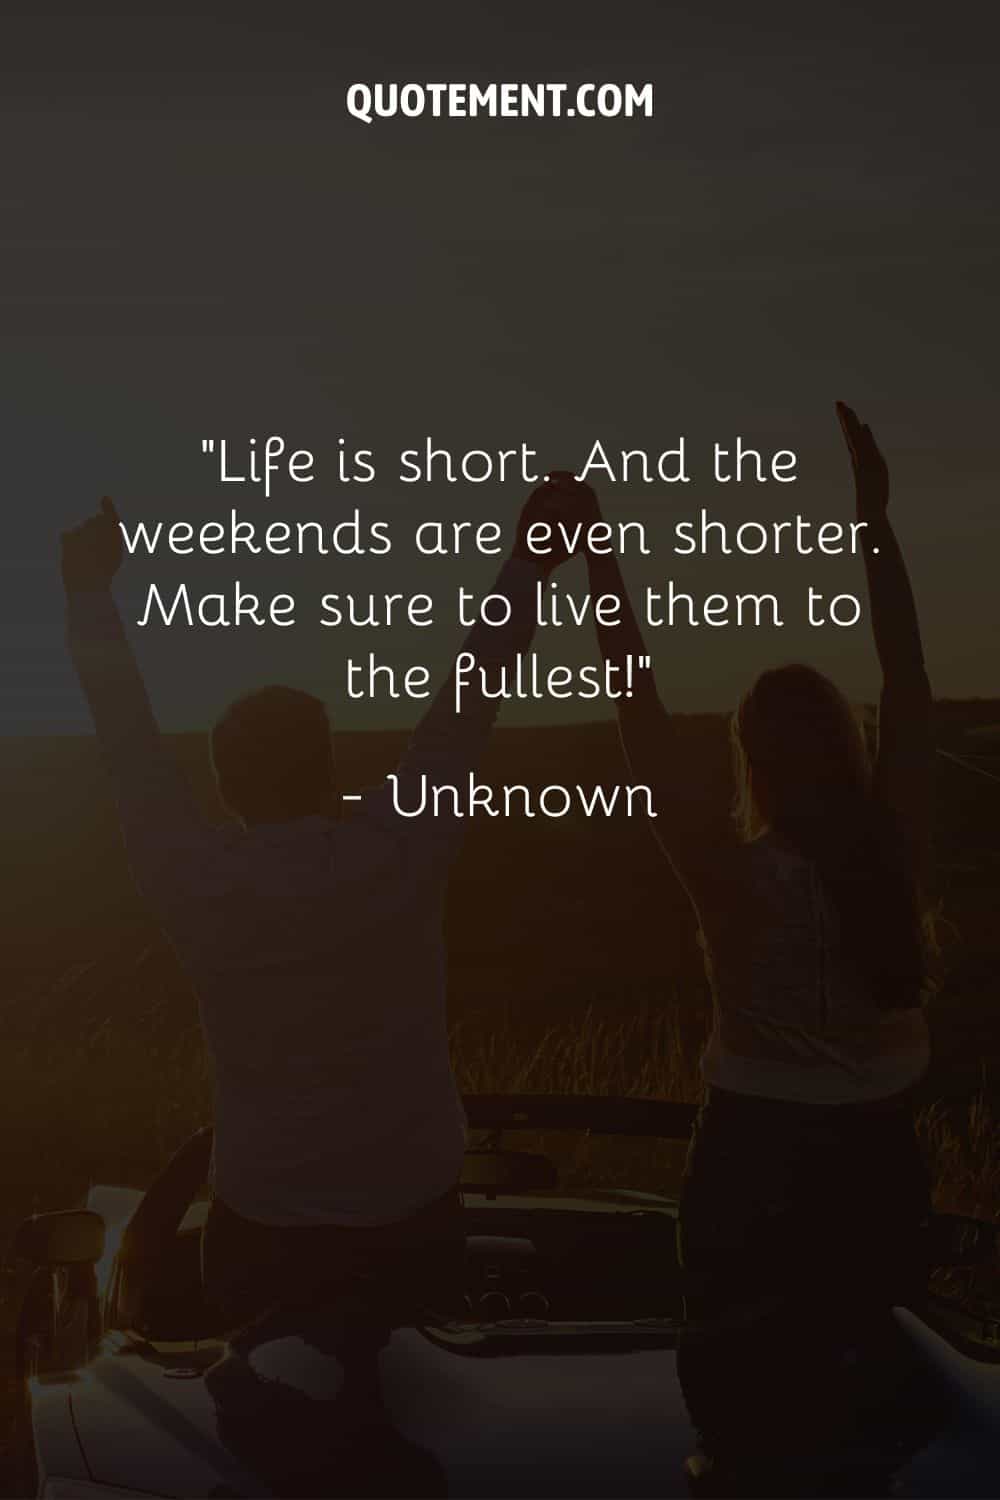 La vida es corta. Y los fines de semana son aún más cortos. Asegúrate de vivirlos al máximo